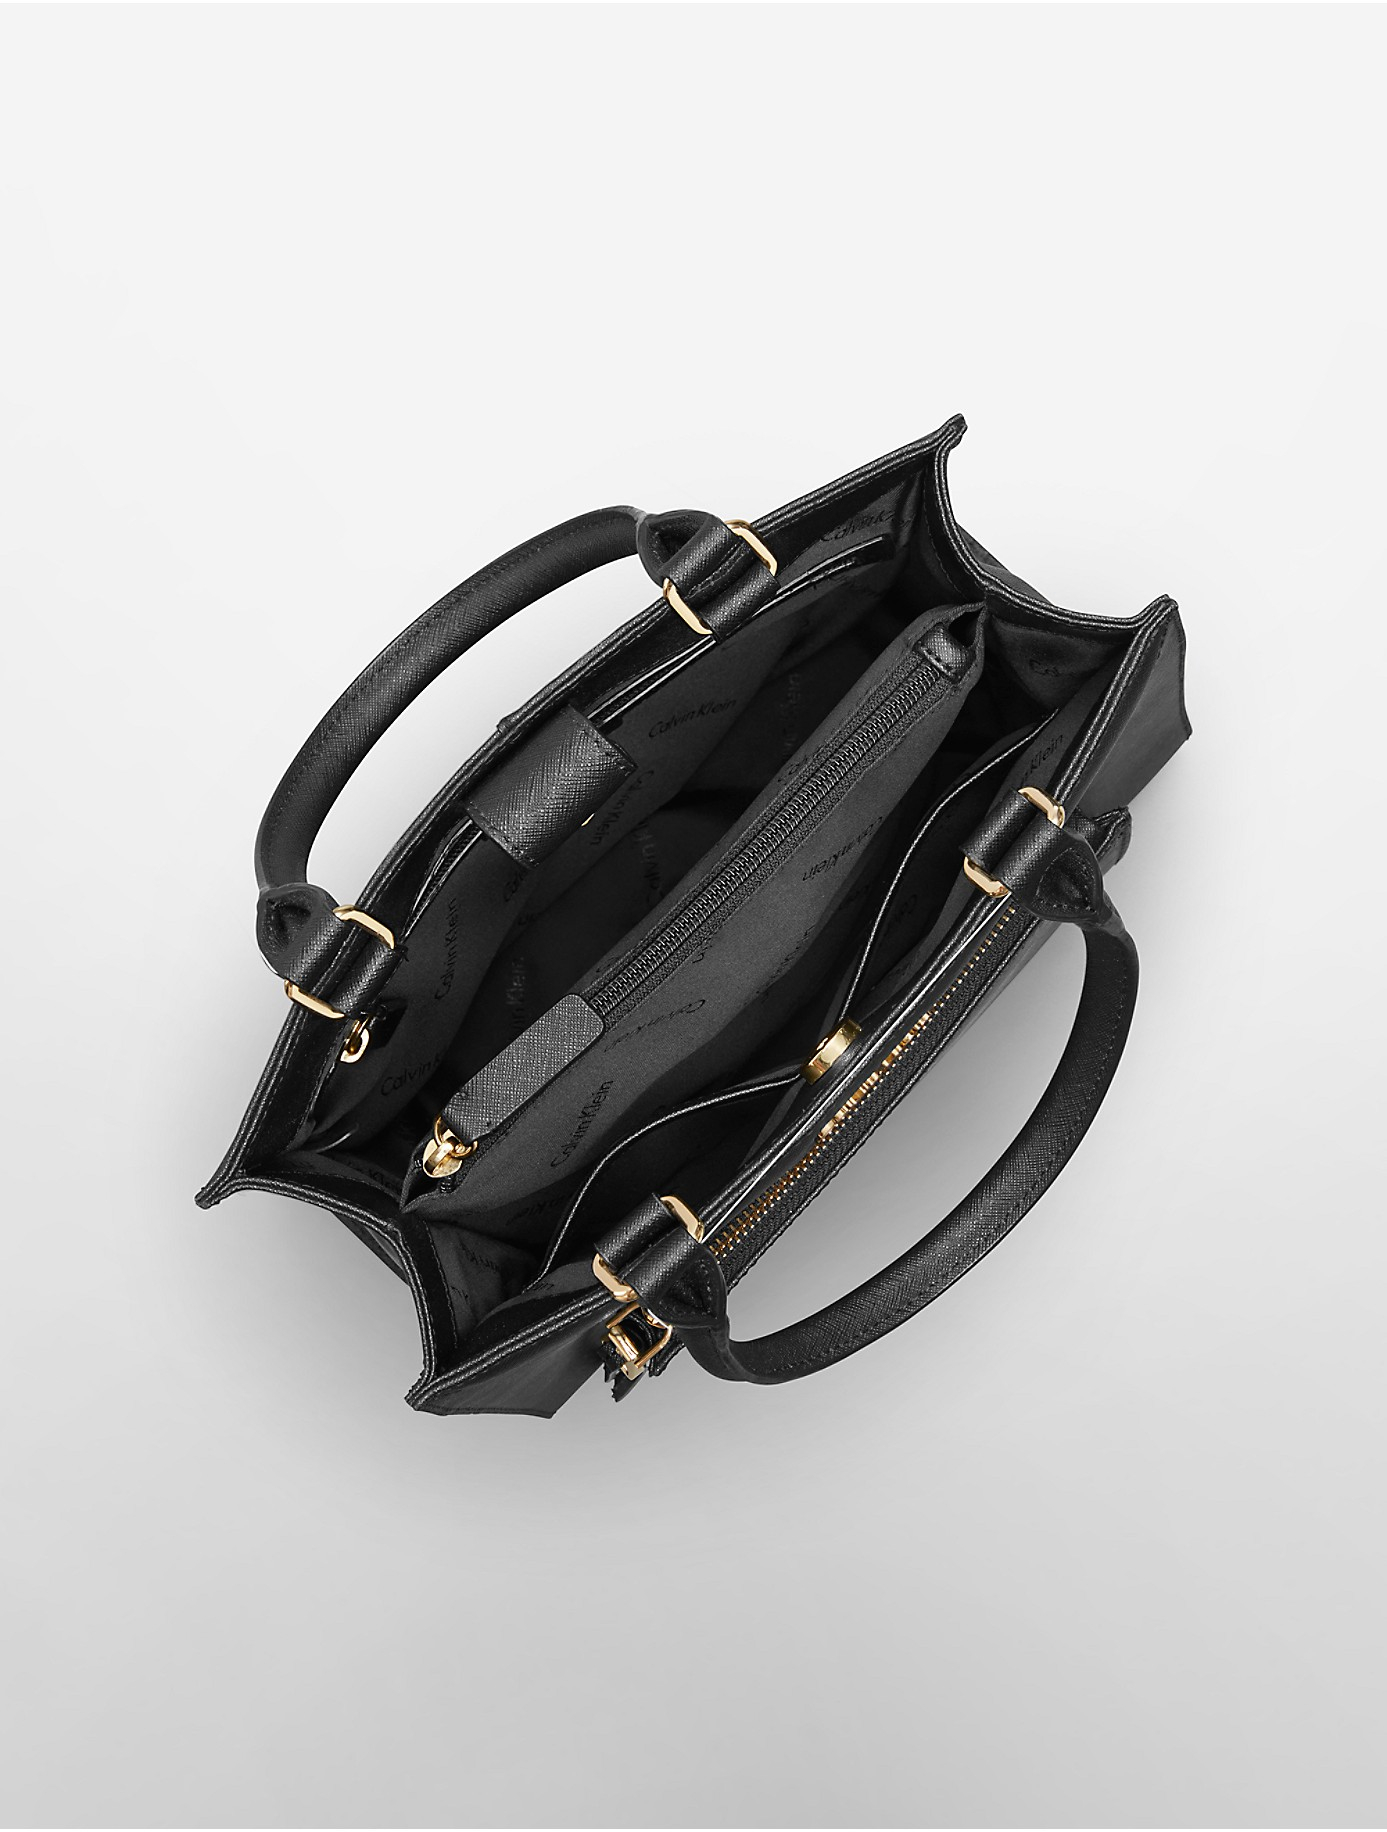 Calvin Klein Saffiano Leather Small Tote Bag in Black | Lyst